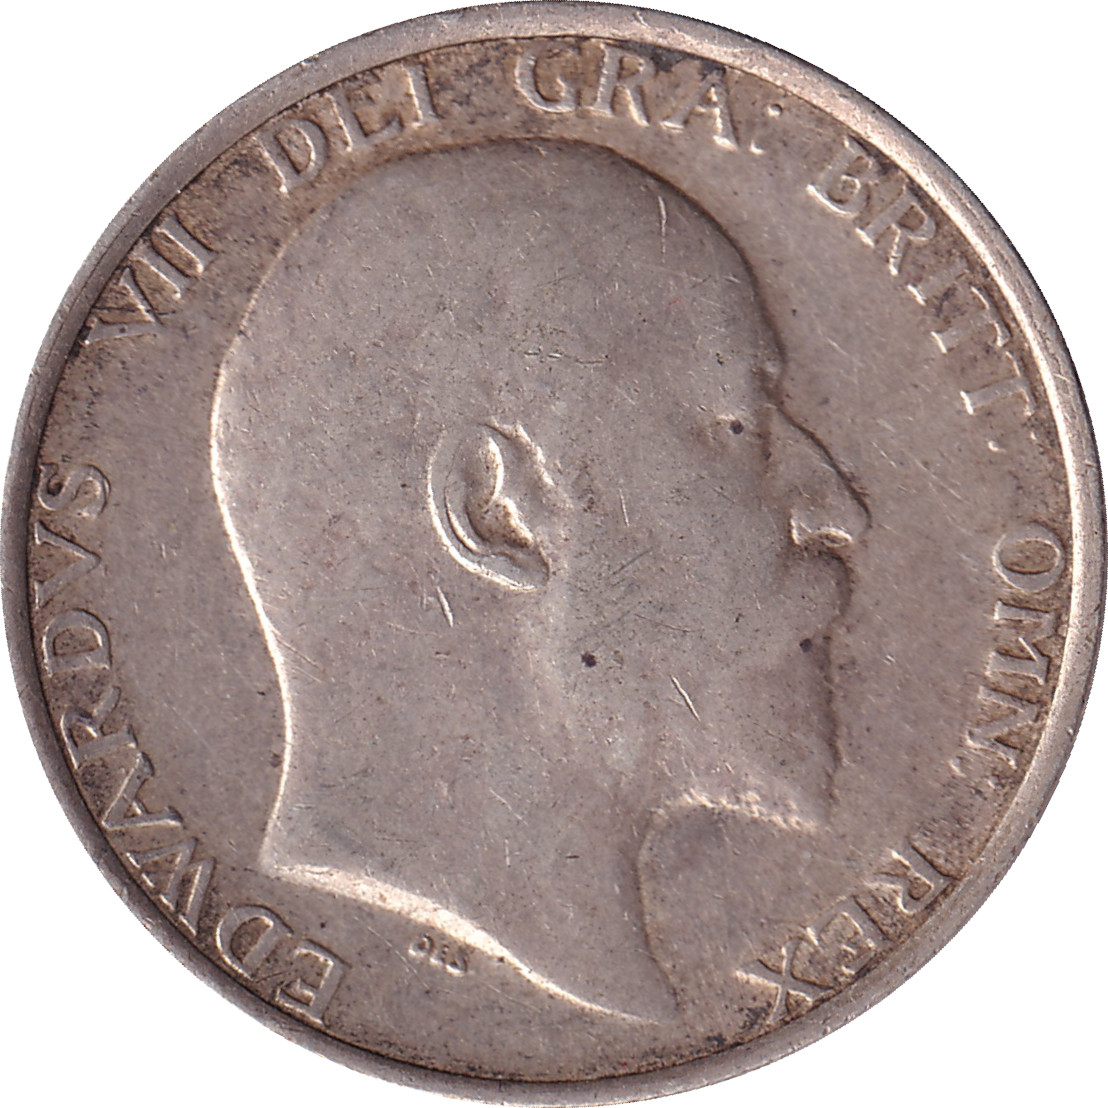 1 shilling - Edward VII